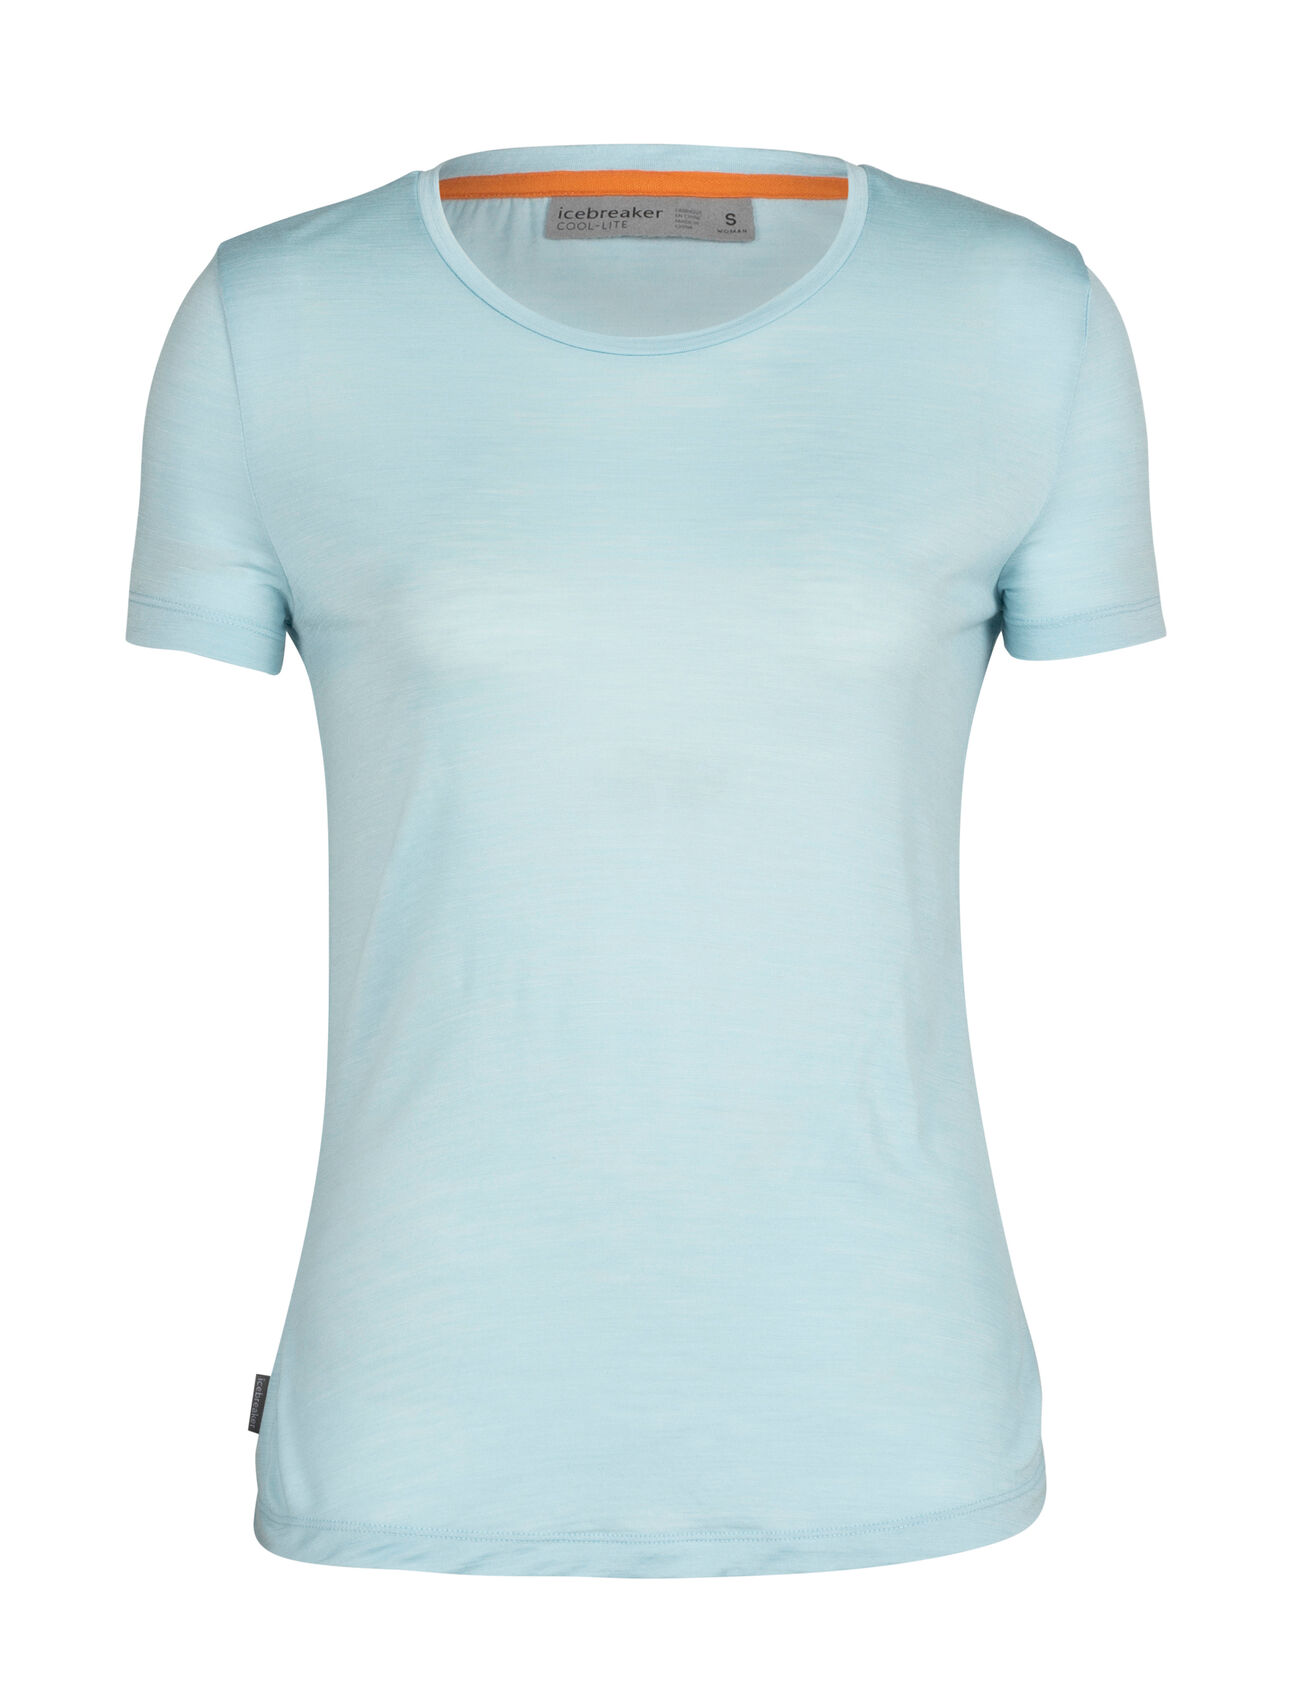 Dam Sphere II kortärmad t-shirt i merino Sphere II kortärmad t-shirt är en mjuk tröja i merinoblandning som är tillverkad av vårt lättviktiga Cool-Lite™-jerseytyg, vilket ger naturligt ventilerande, lukthämmande och bekväma egenskaper. 